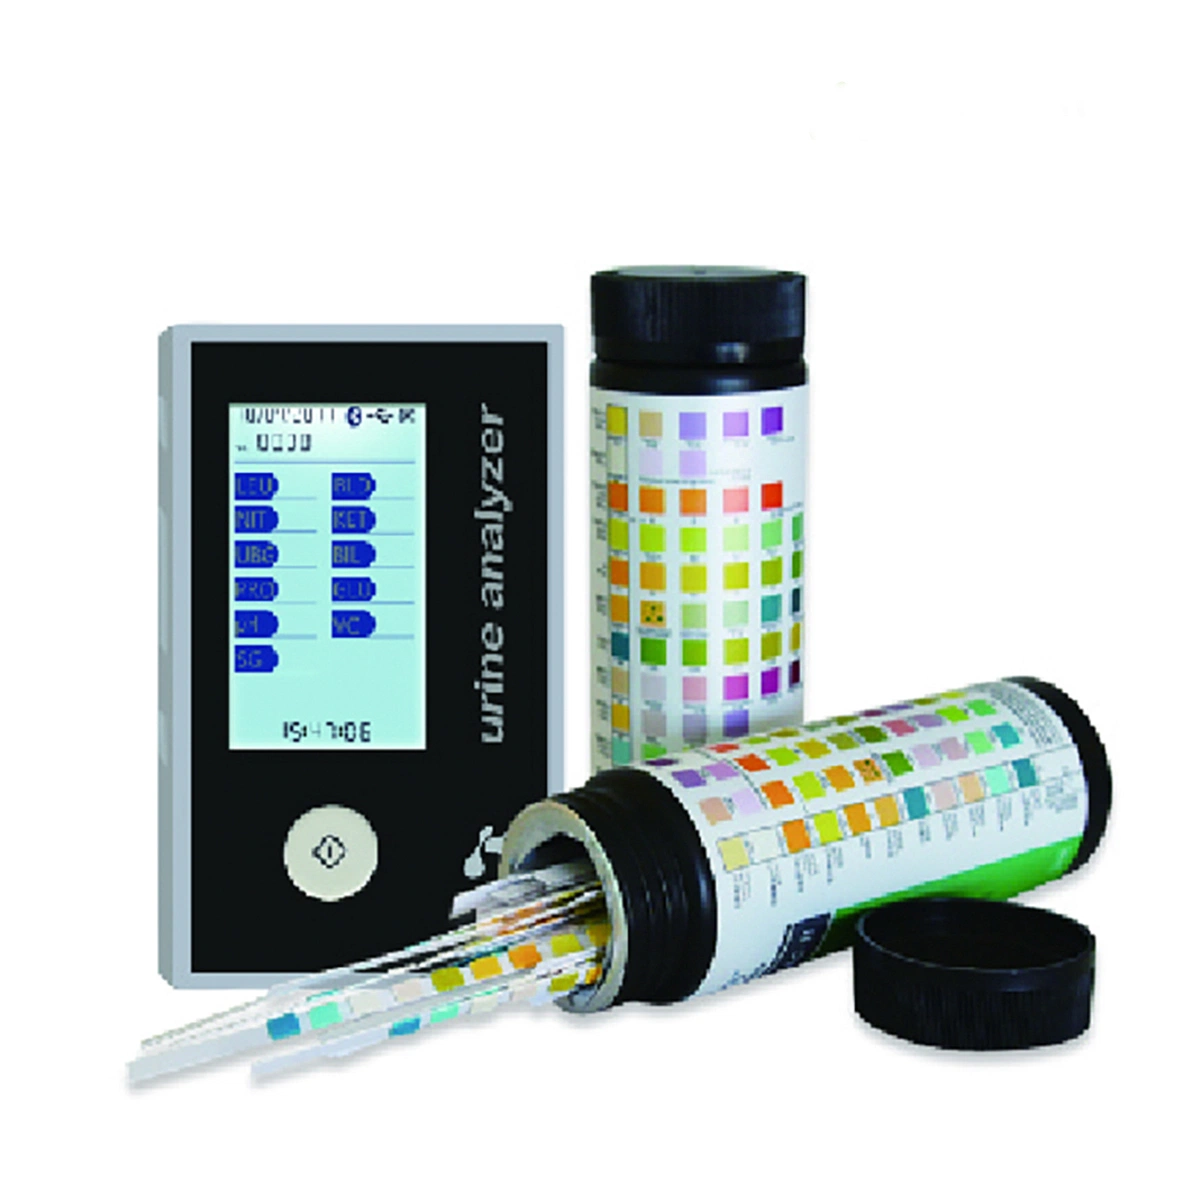 CE-Zulassung 11 Parameter professioneller medizinischer Urin-Analysator mit Streuung Spektrum für Hopsital-Einsatz Hcu01-7